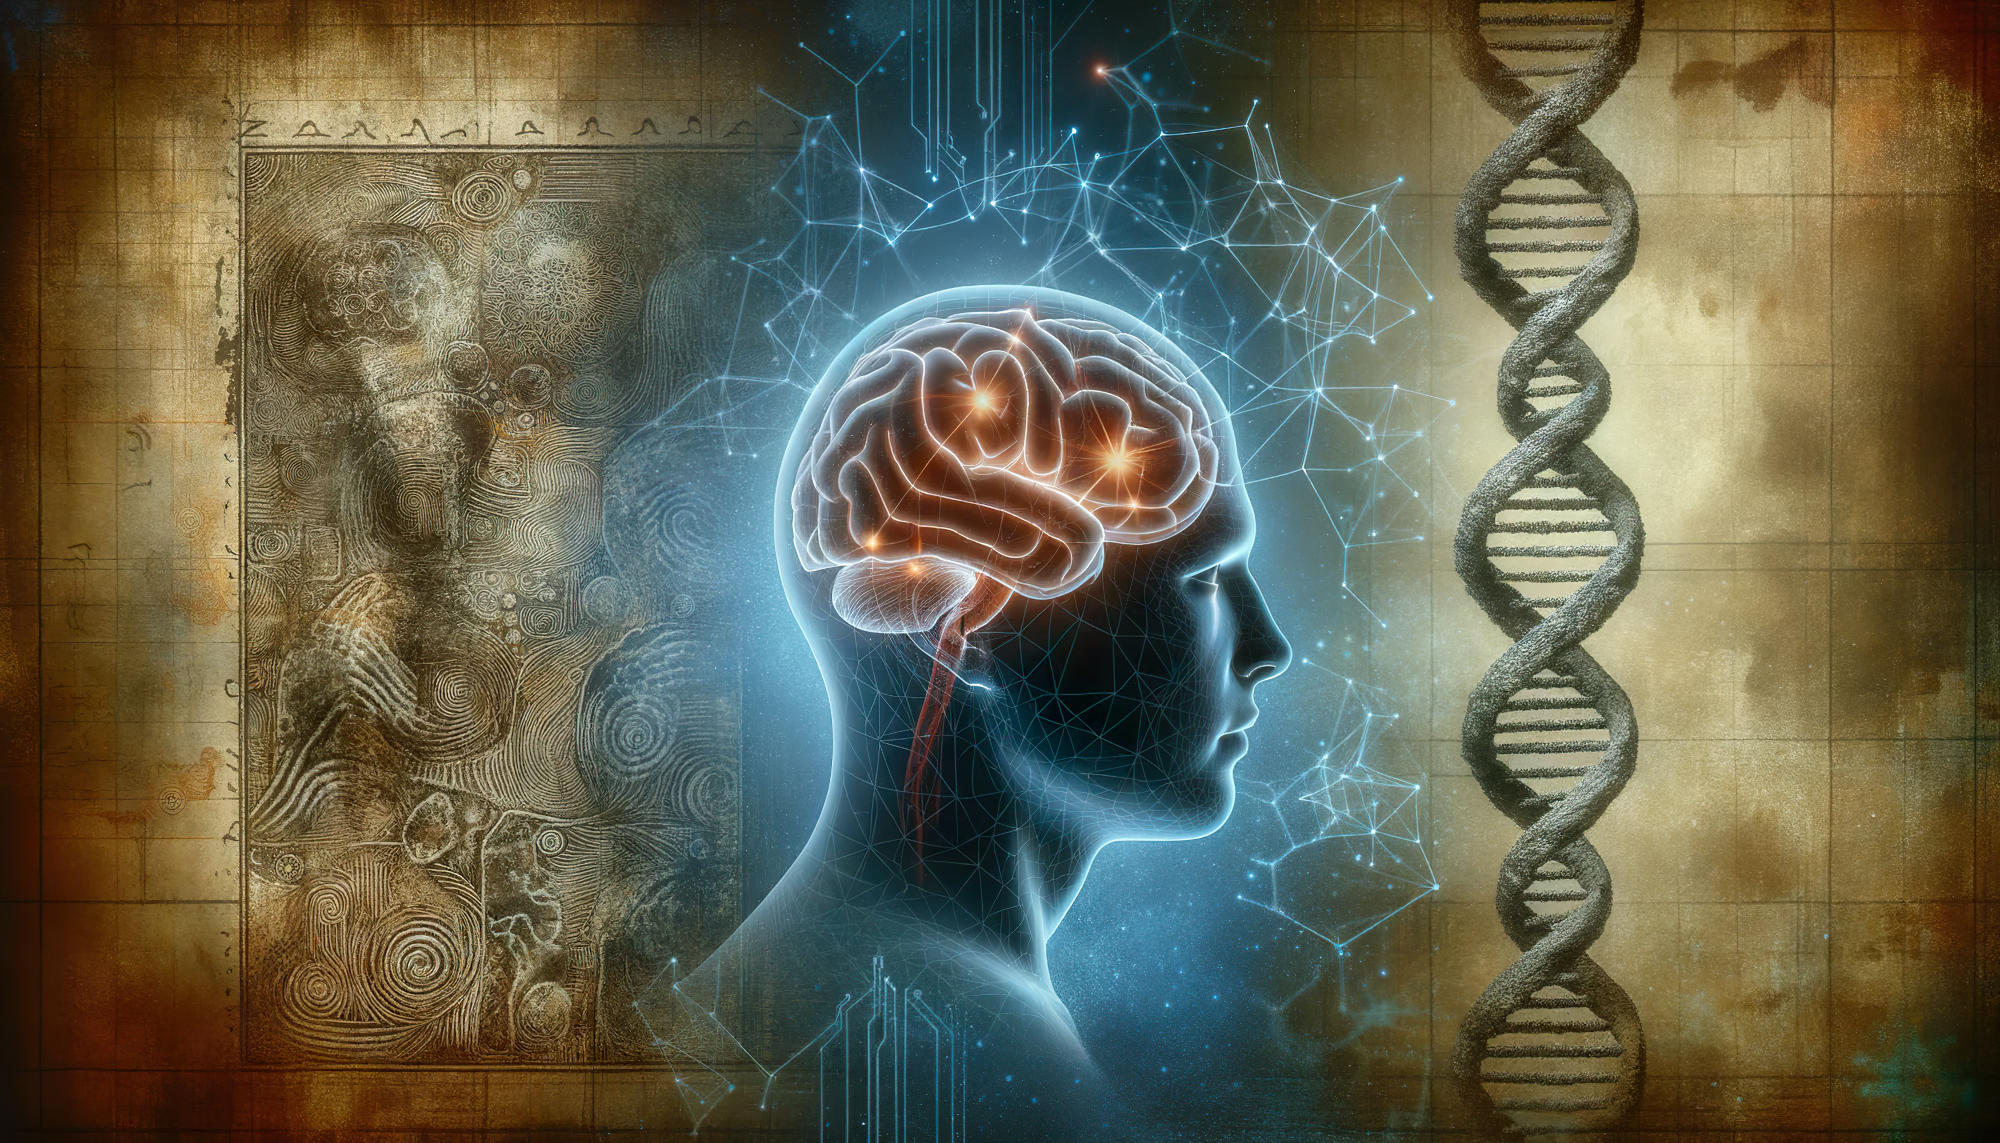 El antiguo ADN denisovano podría aumentar el riesgo de que los humanos modernos desarrollen trastornos de salud mental como la depresión